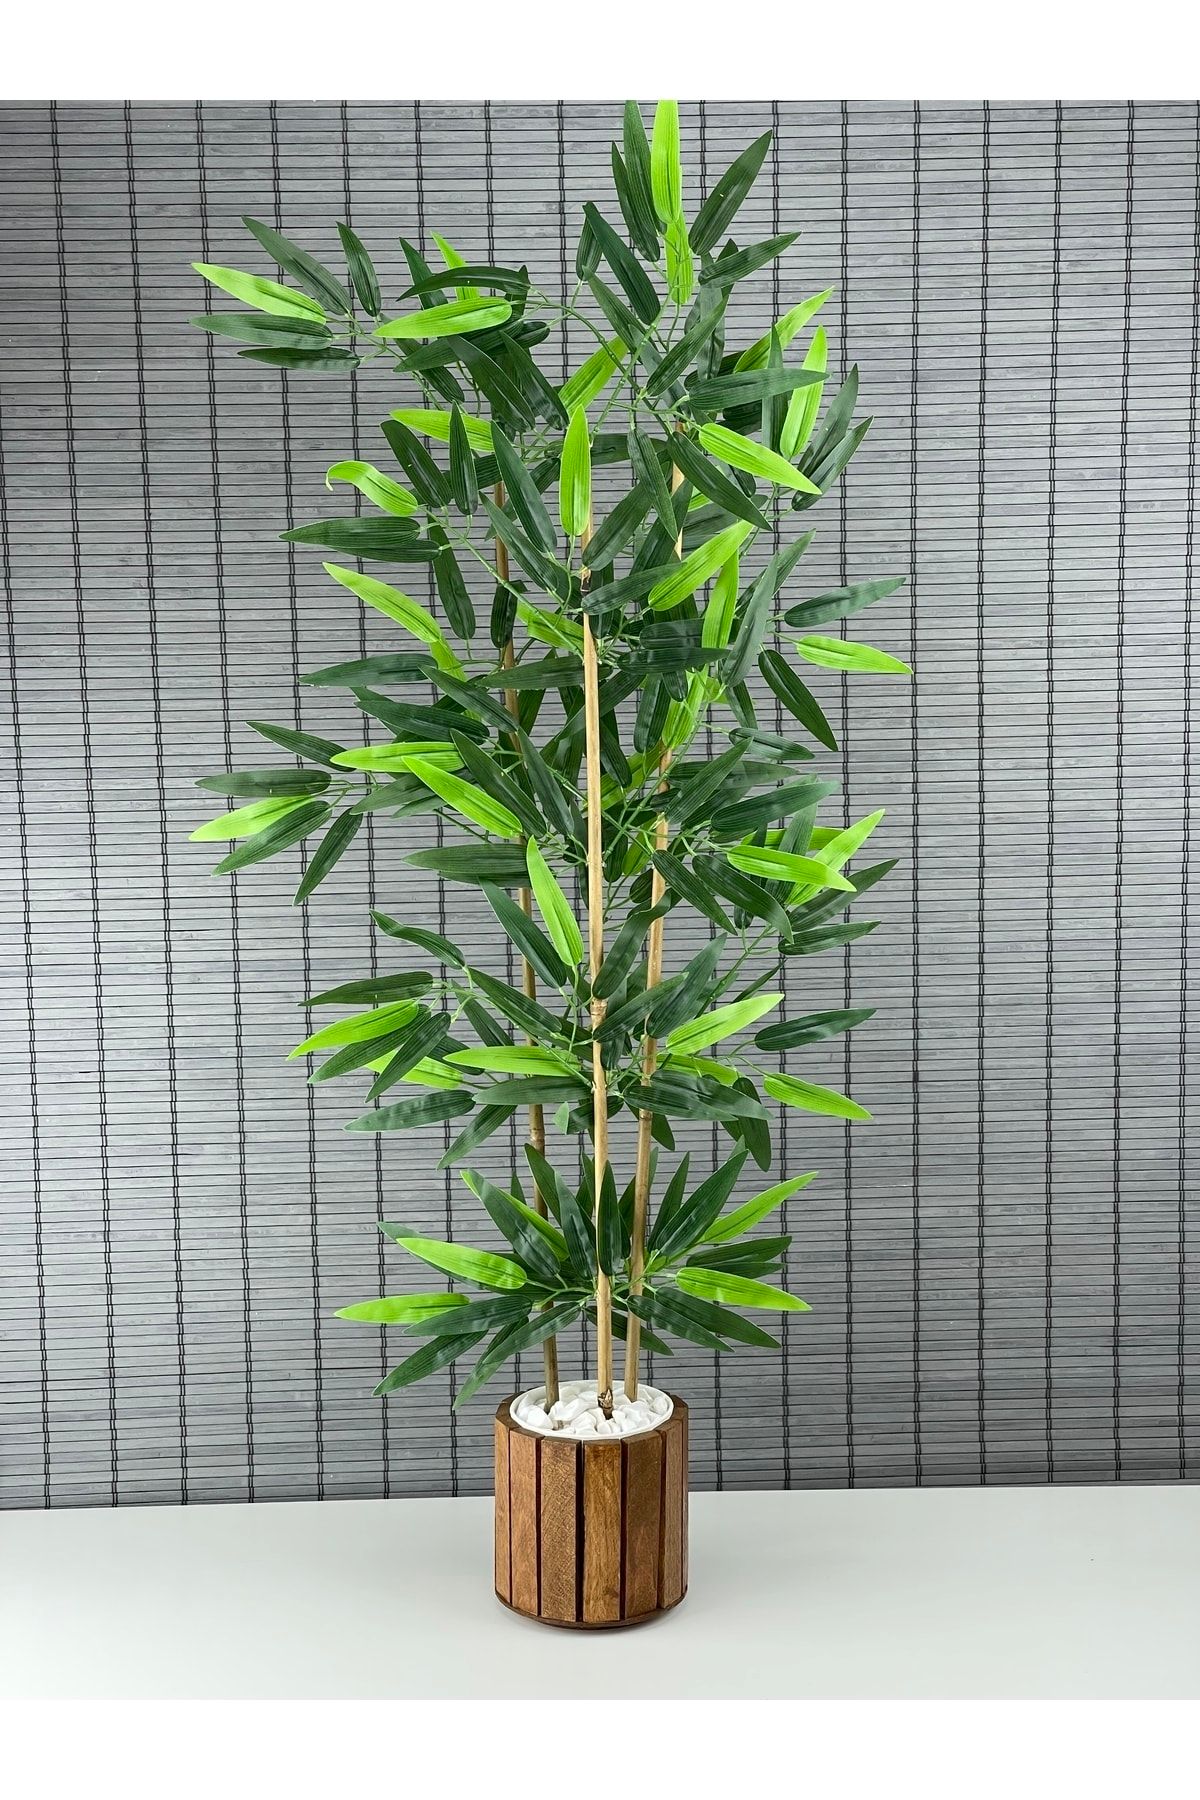 Bahçem Ahşap Saksılı Yapay Yoğun Yapraklı Dekoratif Bambu Ağacı 3 Gövde 110cm %100 Orjinal Bambu Gövde